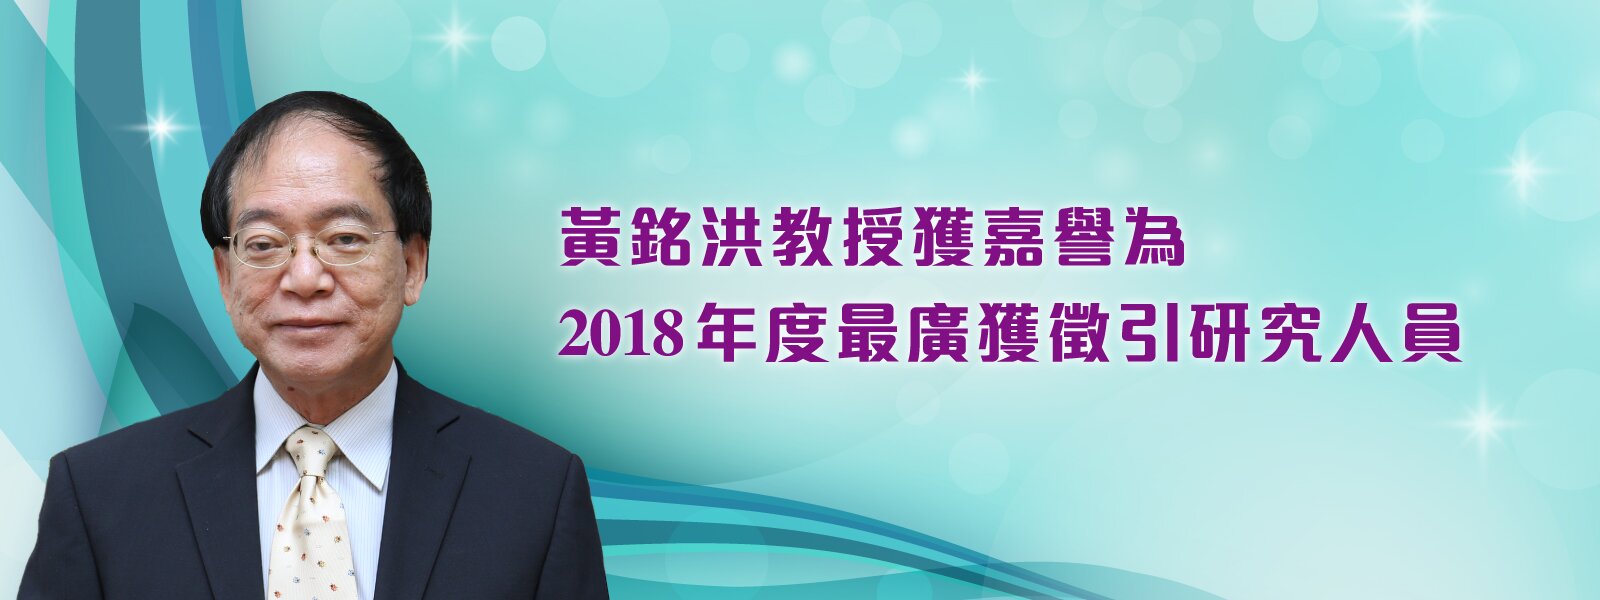 黄铭洪教授获嘉誉为2018年度最广获征引研究人员